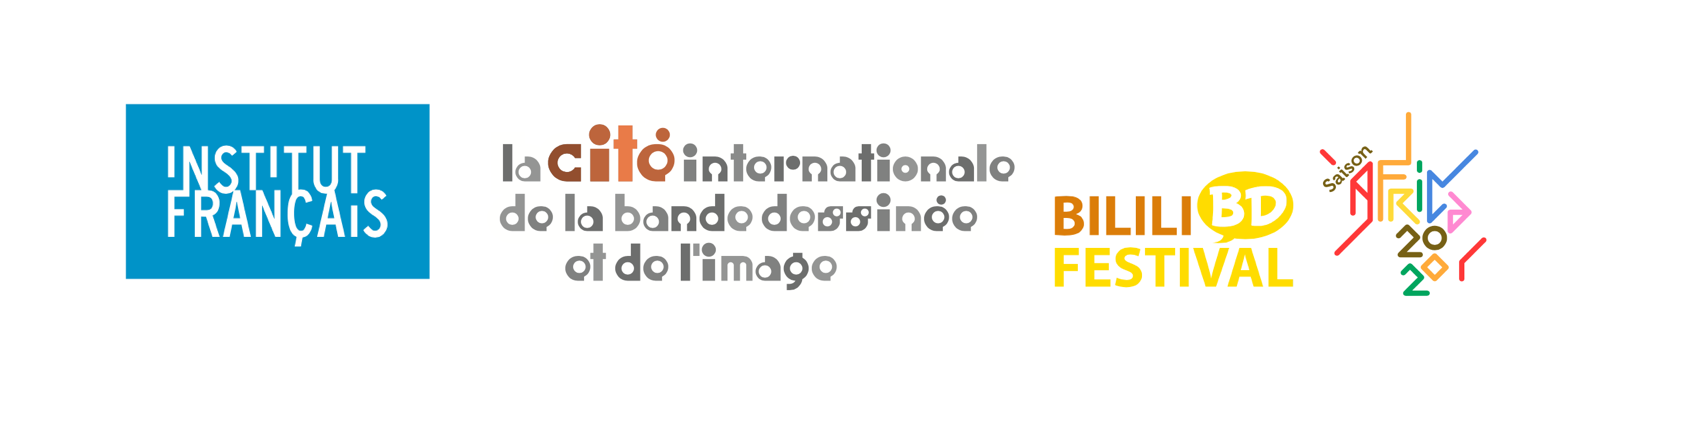 Logo de l'Institut Français et de la Cité internationale de la bande dessinée et de l'image ainsi que Bilili BD Festival